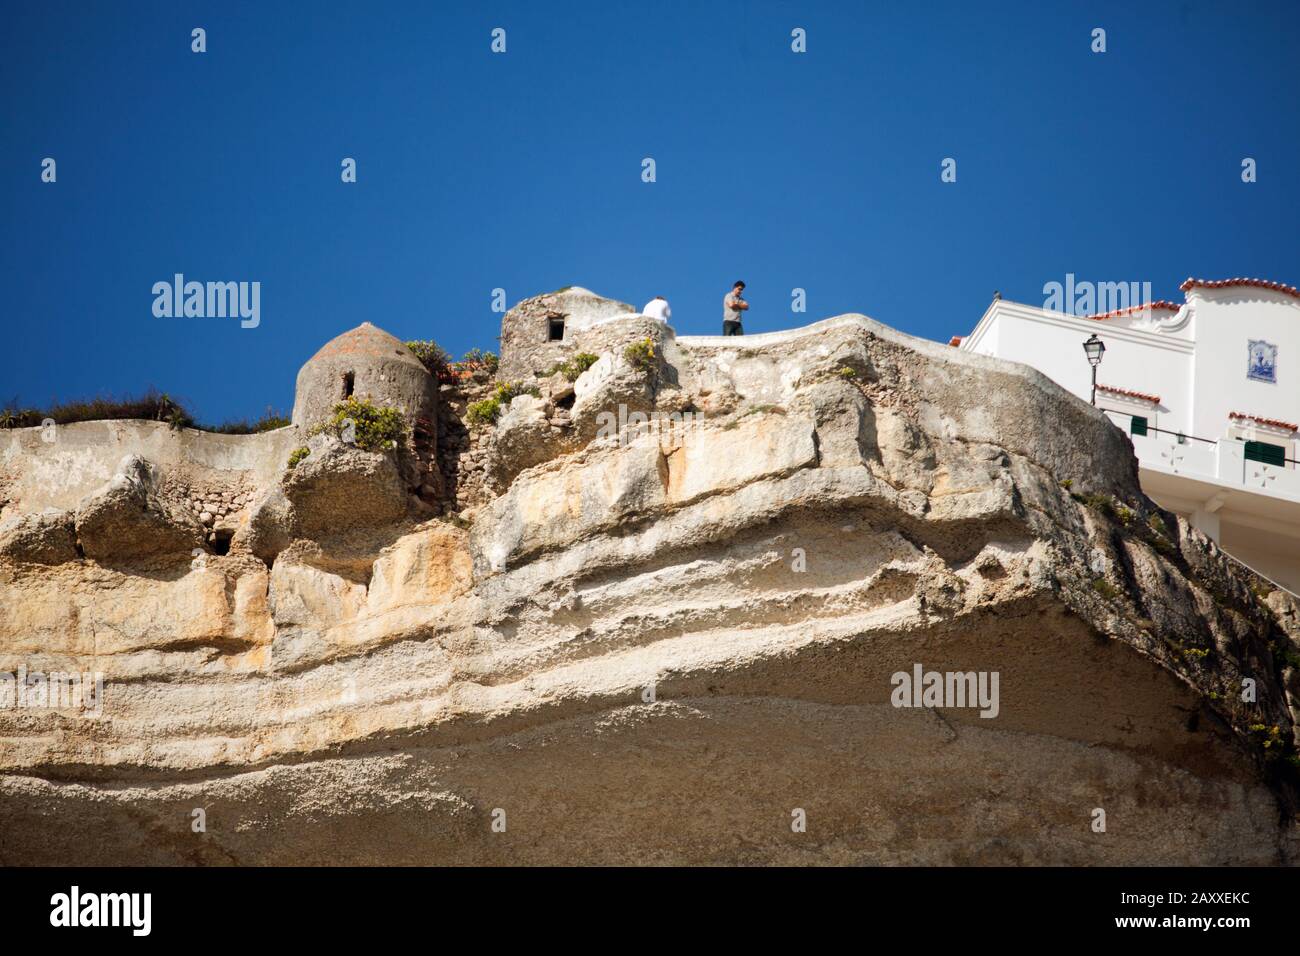 Le quartier de Sitio est situé sur des falaises abruptes. L'homme se tenant sur une falaise au-dessus des ouvertures de tir surplombe la mer et la plage de Praia. Banque D'Images